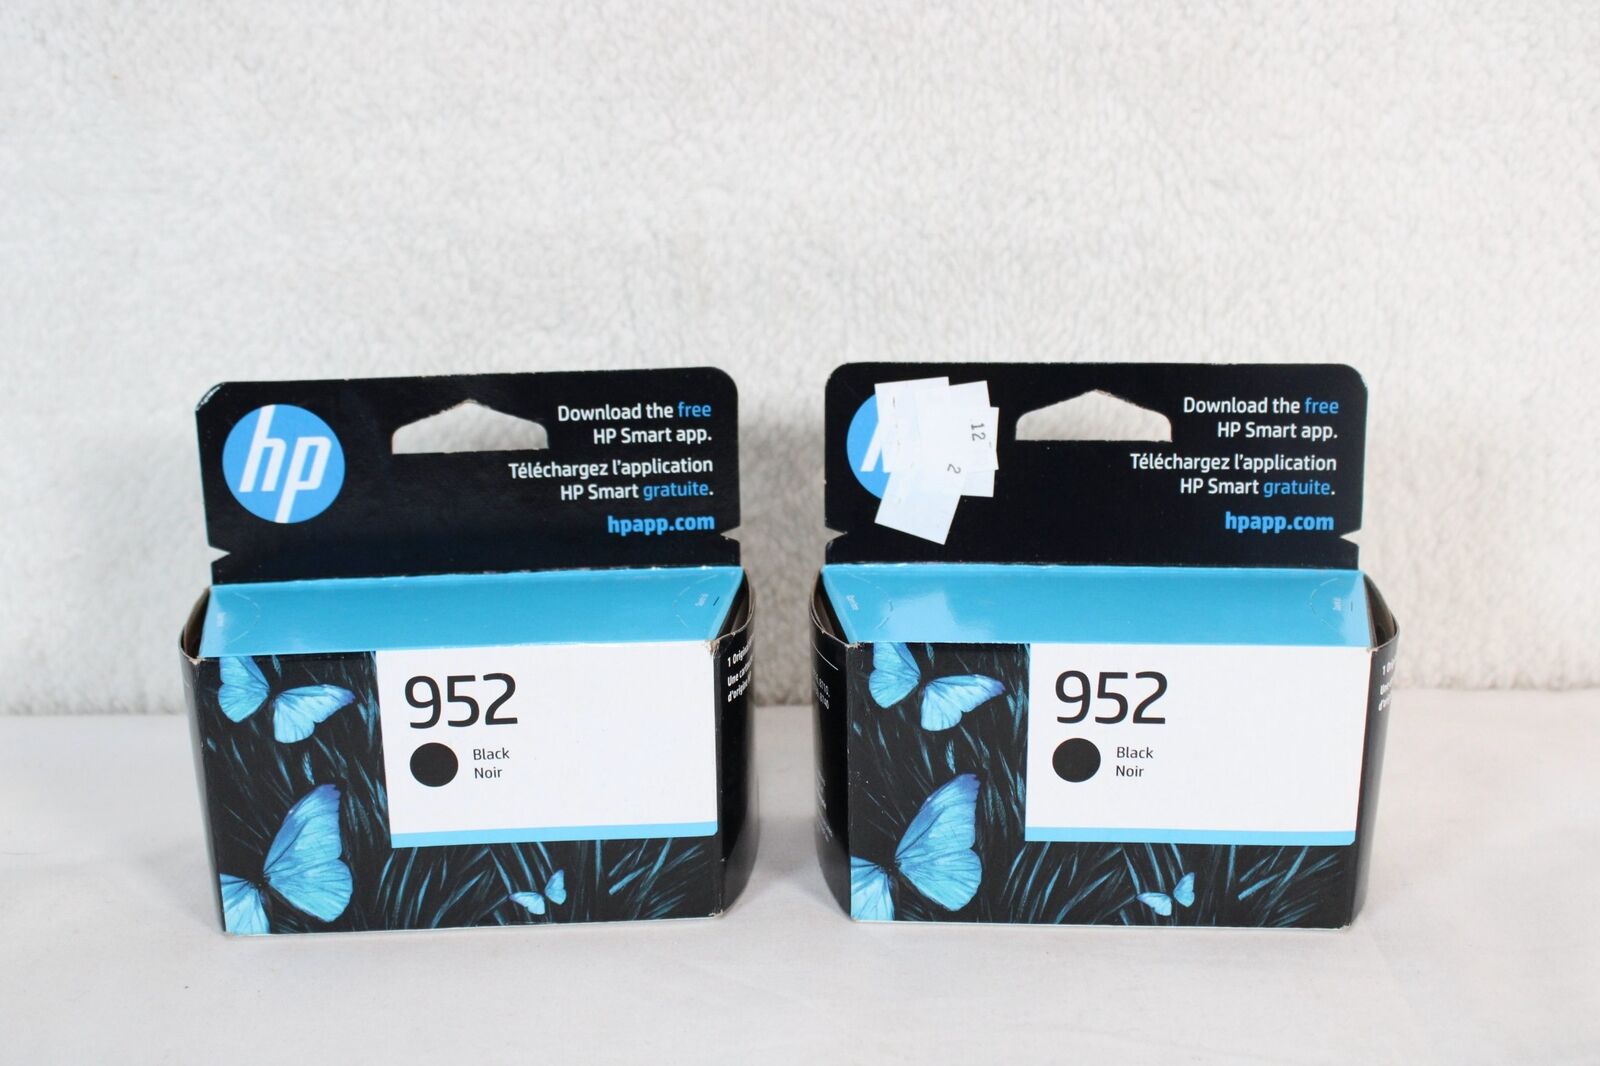 2 Pack of Genuine Original HP 952 Ink Cartridge Black EXP 02/24